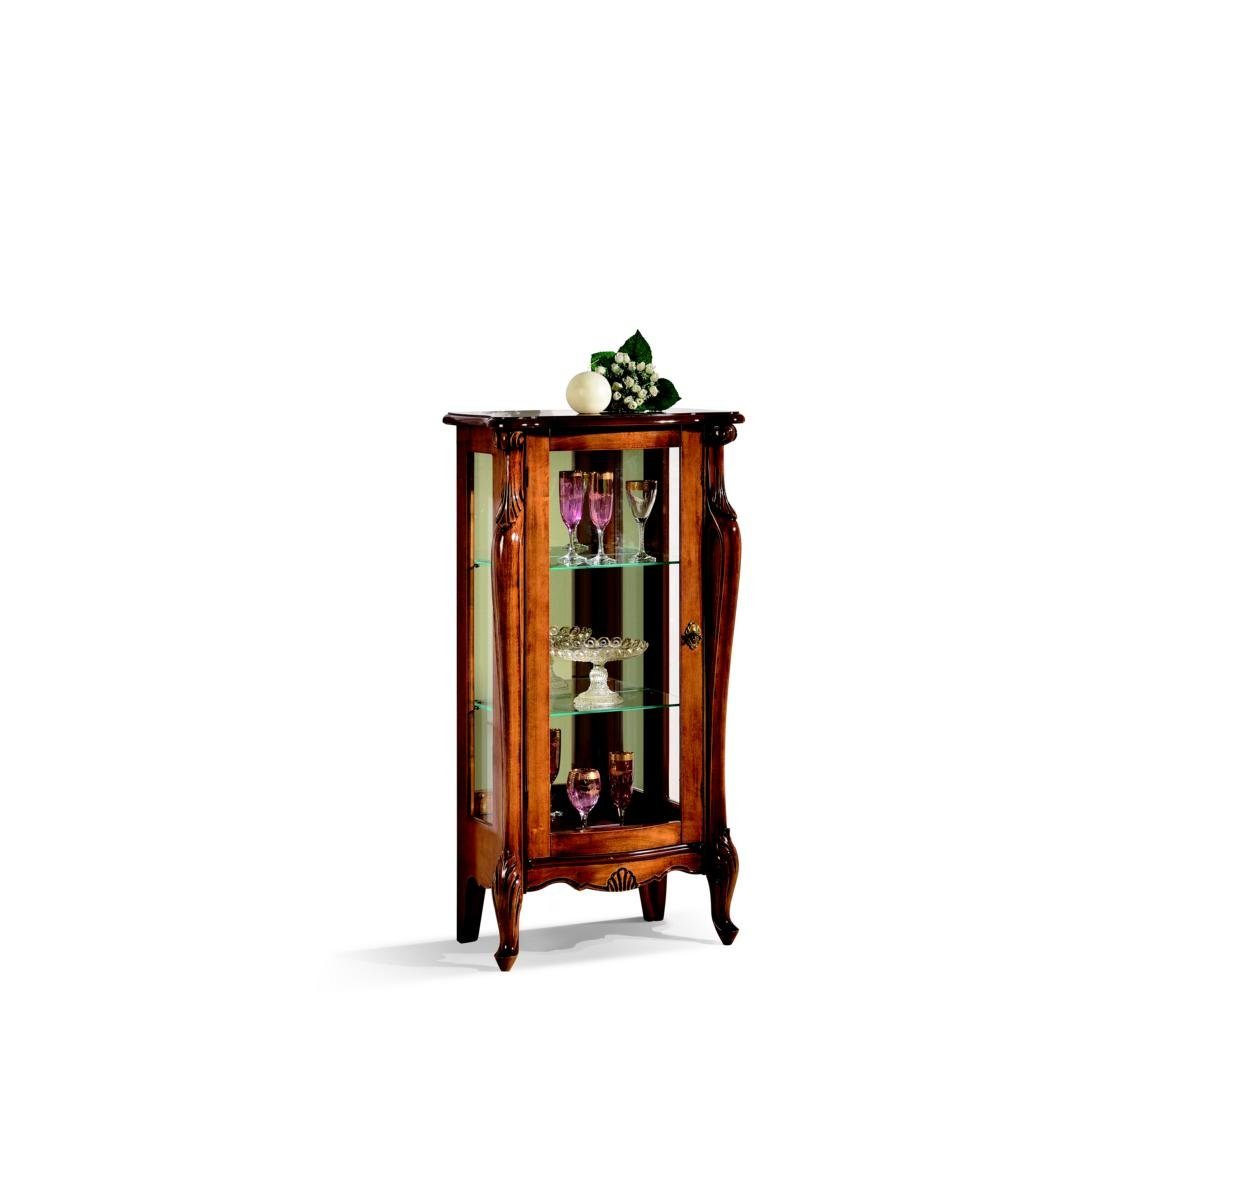 JVmoebel Vitrine Design Möbel Luxus Holz Vitrine Stil Antik Baroco Schrank Italienische Möbel